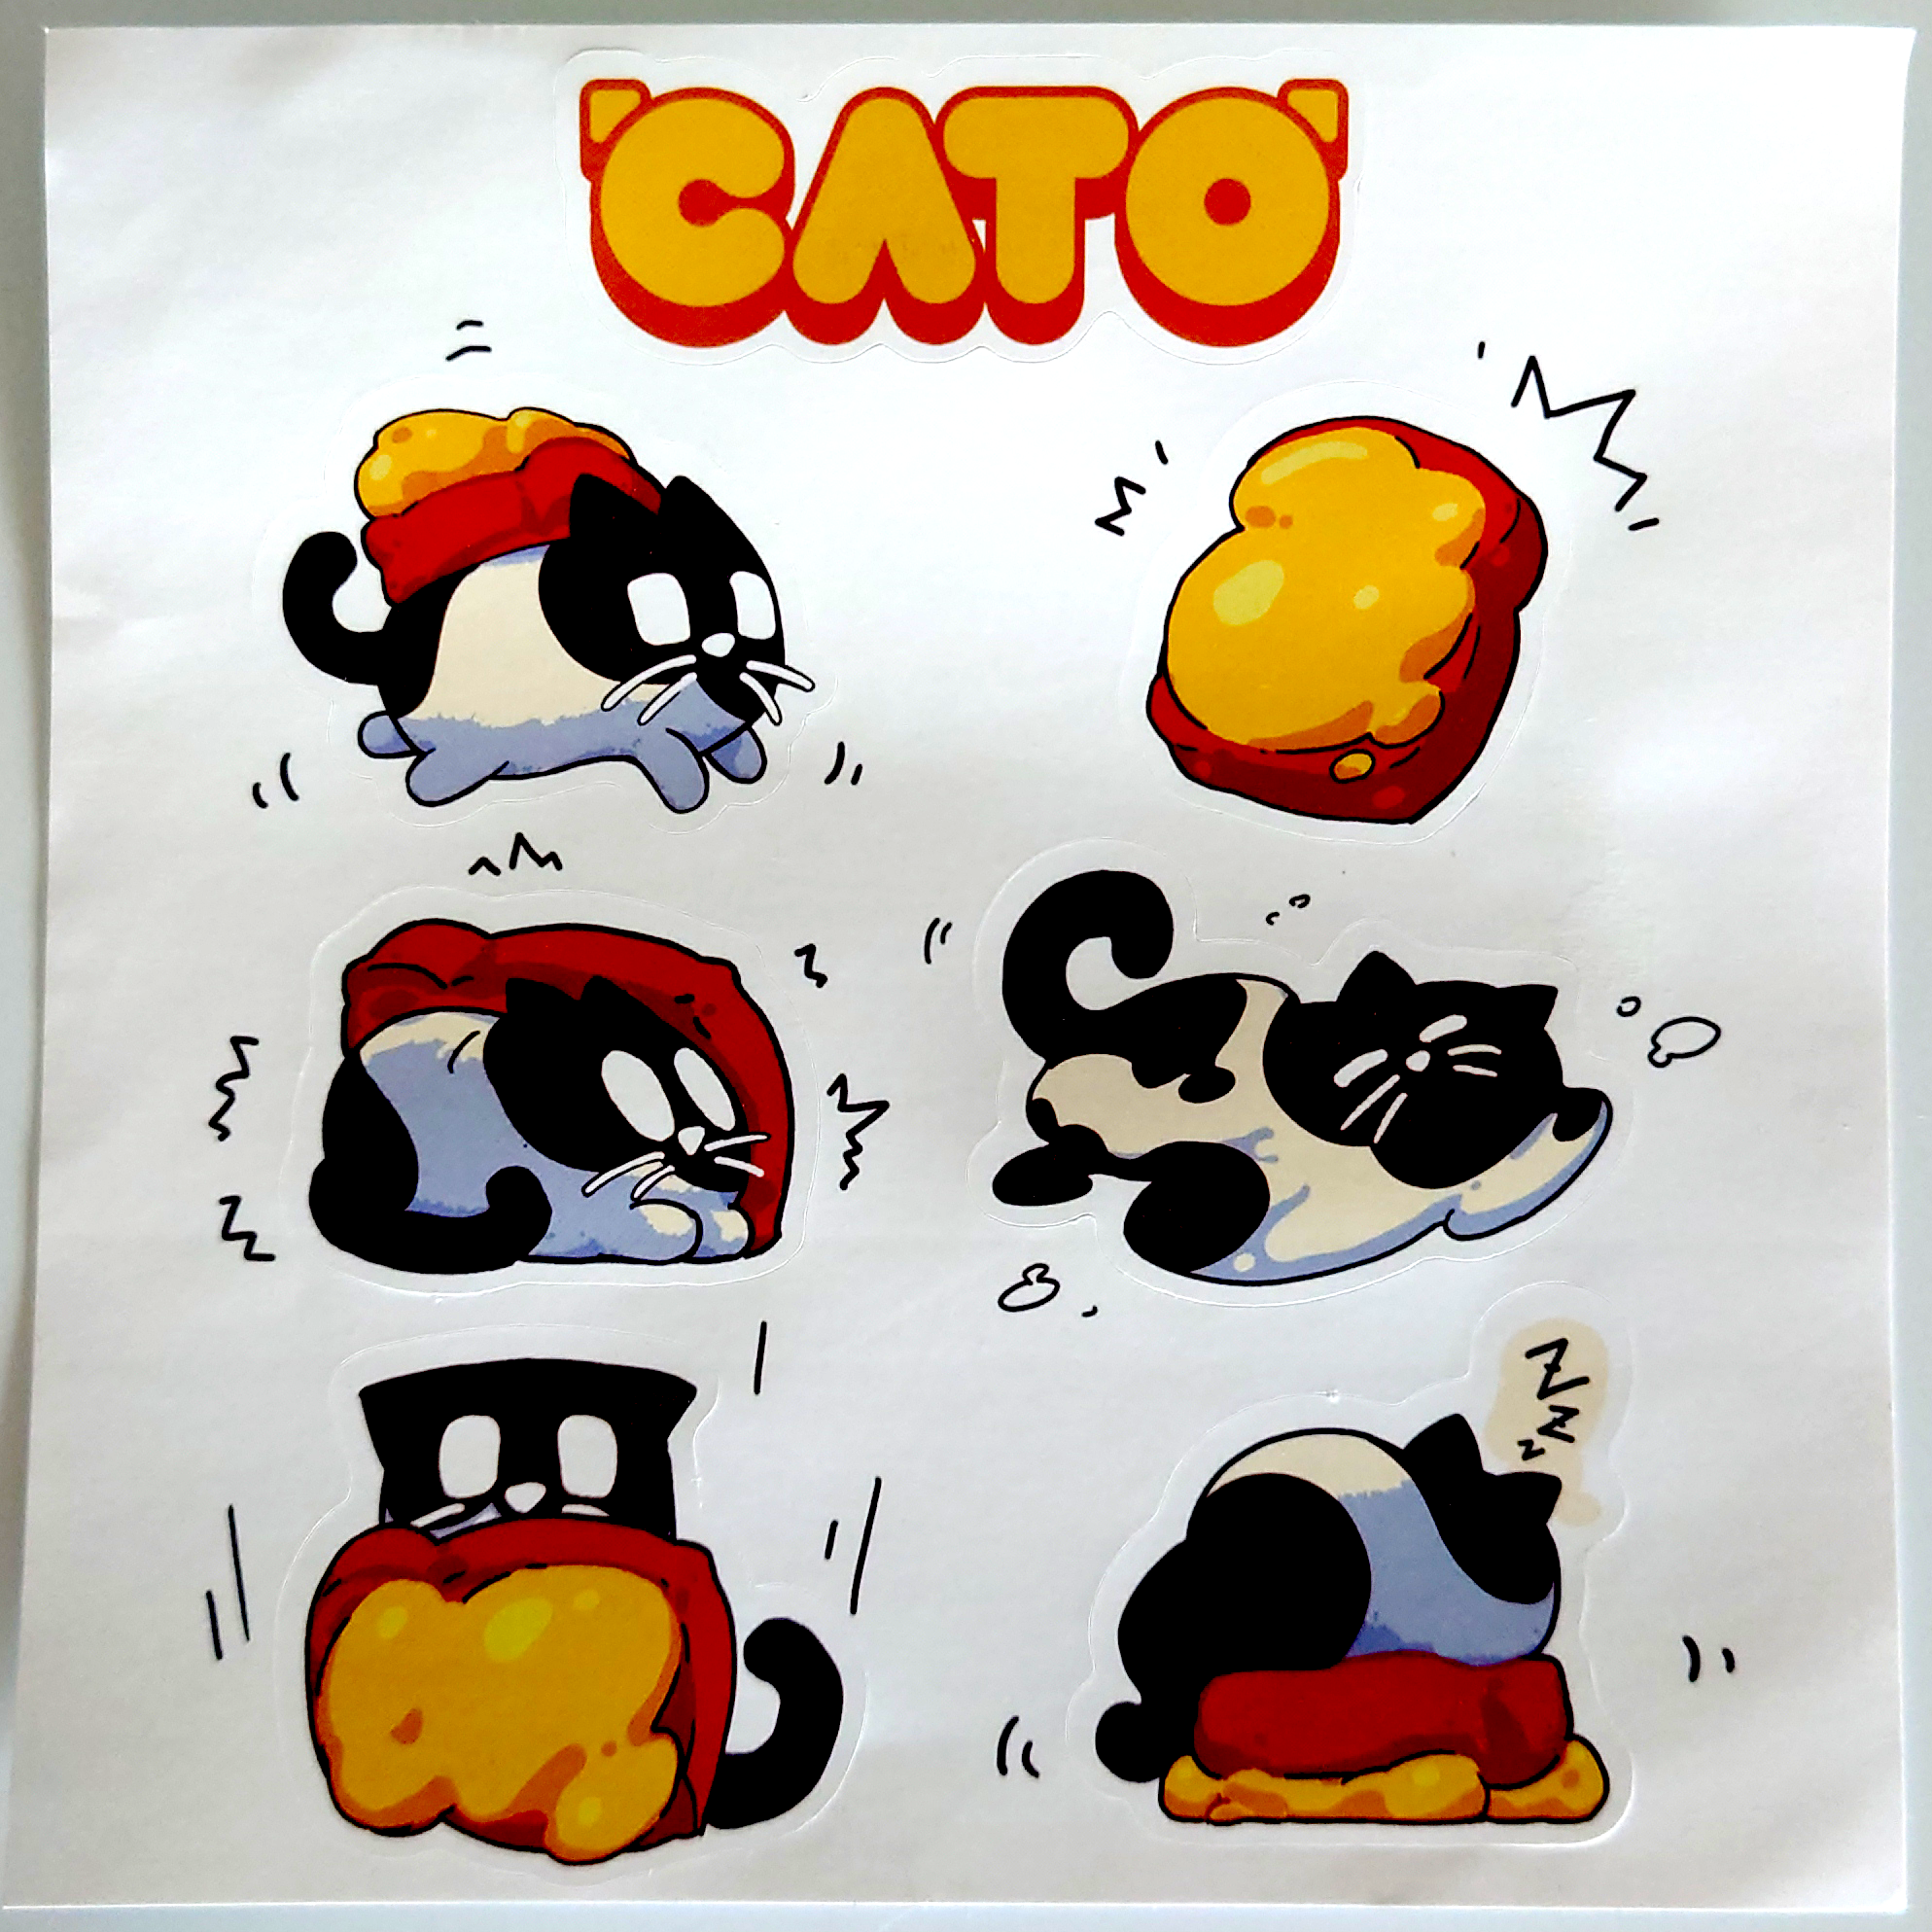 广州核聚变最可爱纪念品:《CATO》贴纸！当然是舍不得贴了